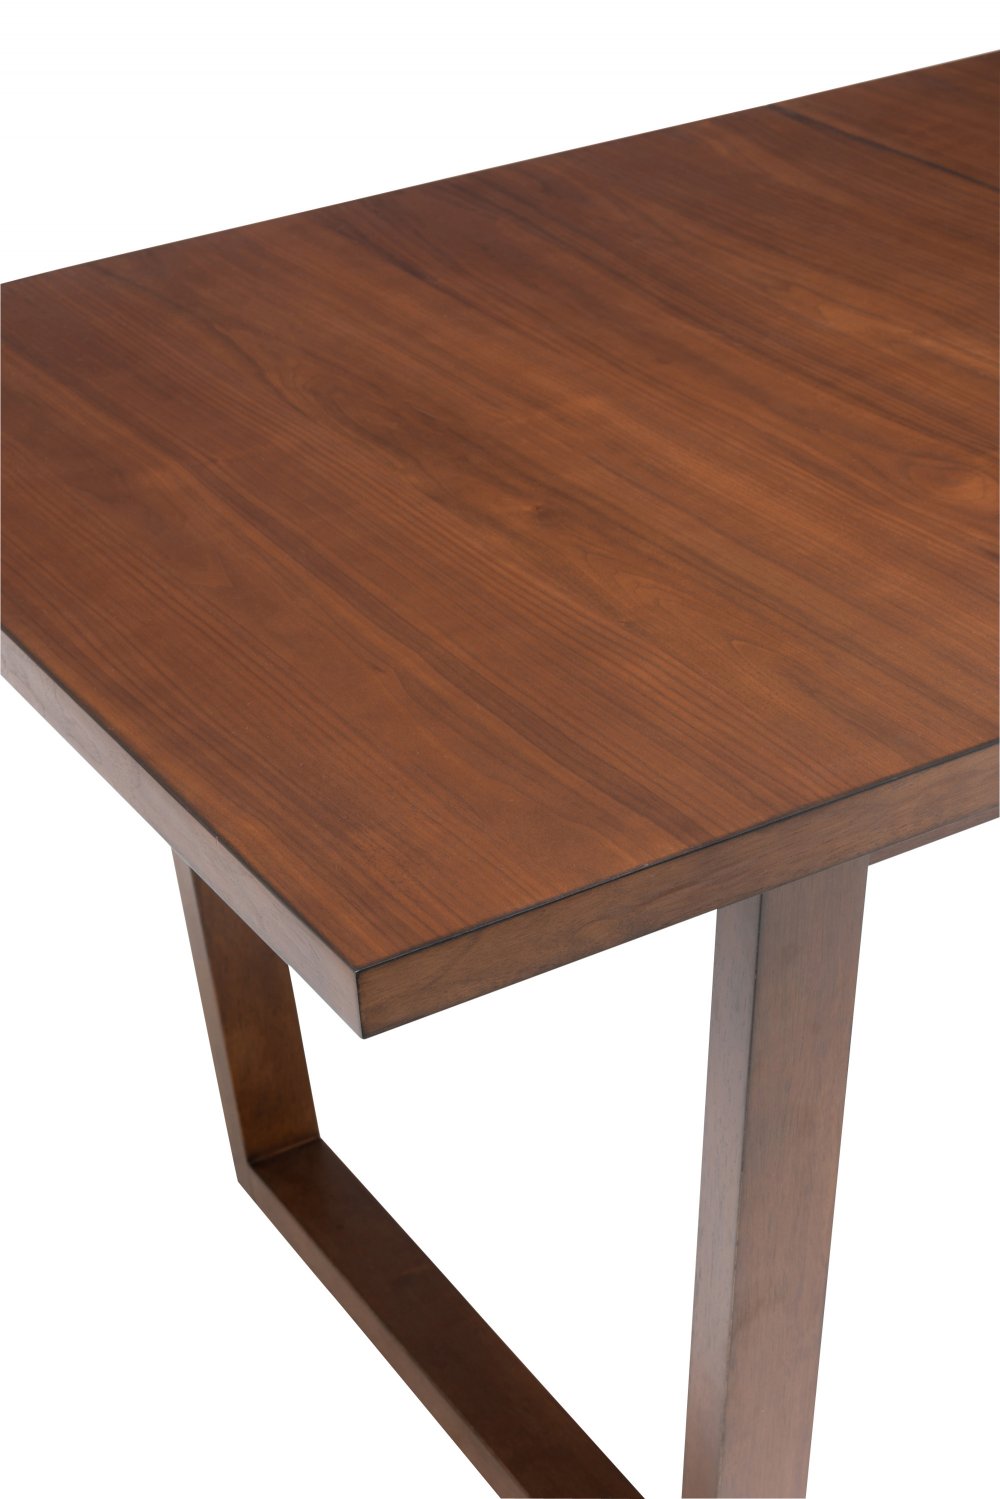 Table à rallonge vintage KENU brun et beige en bois hévéa.